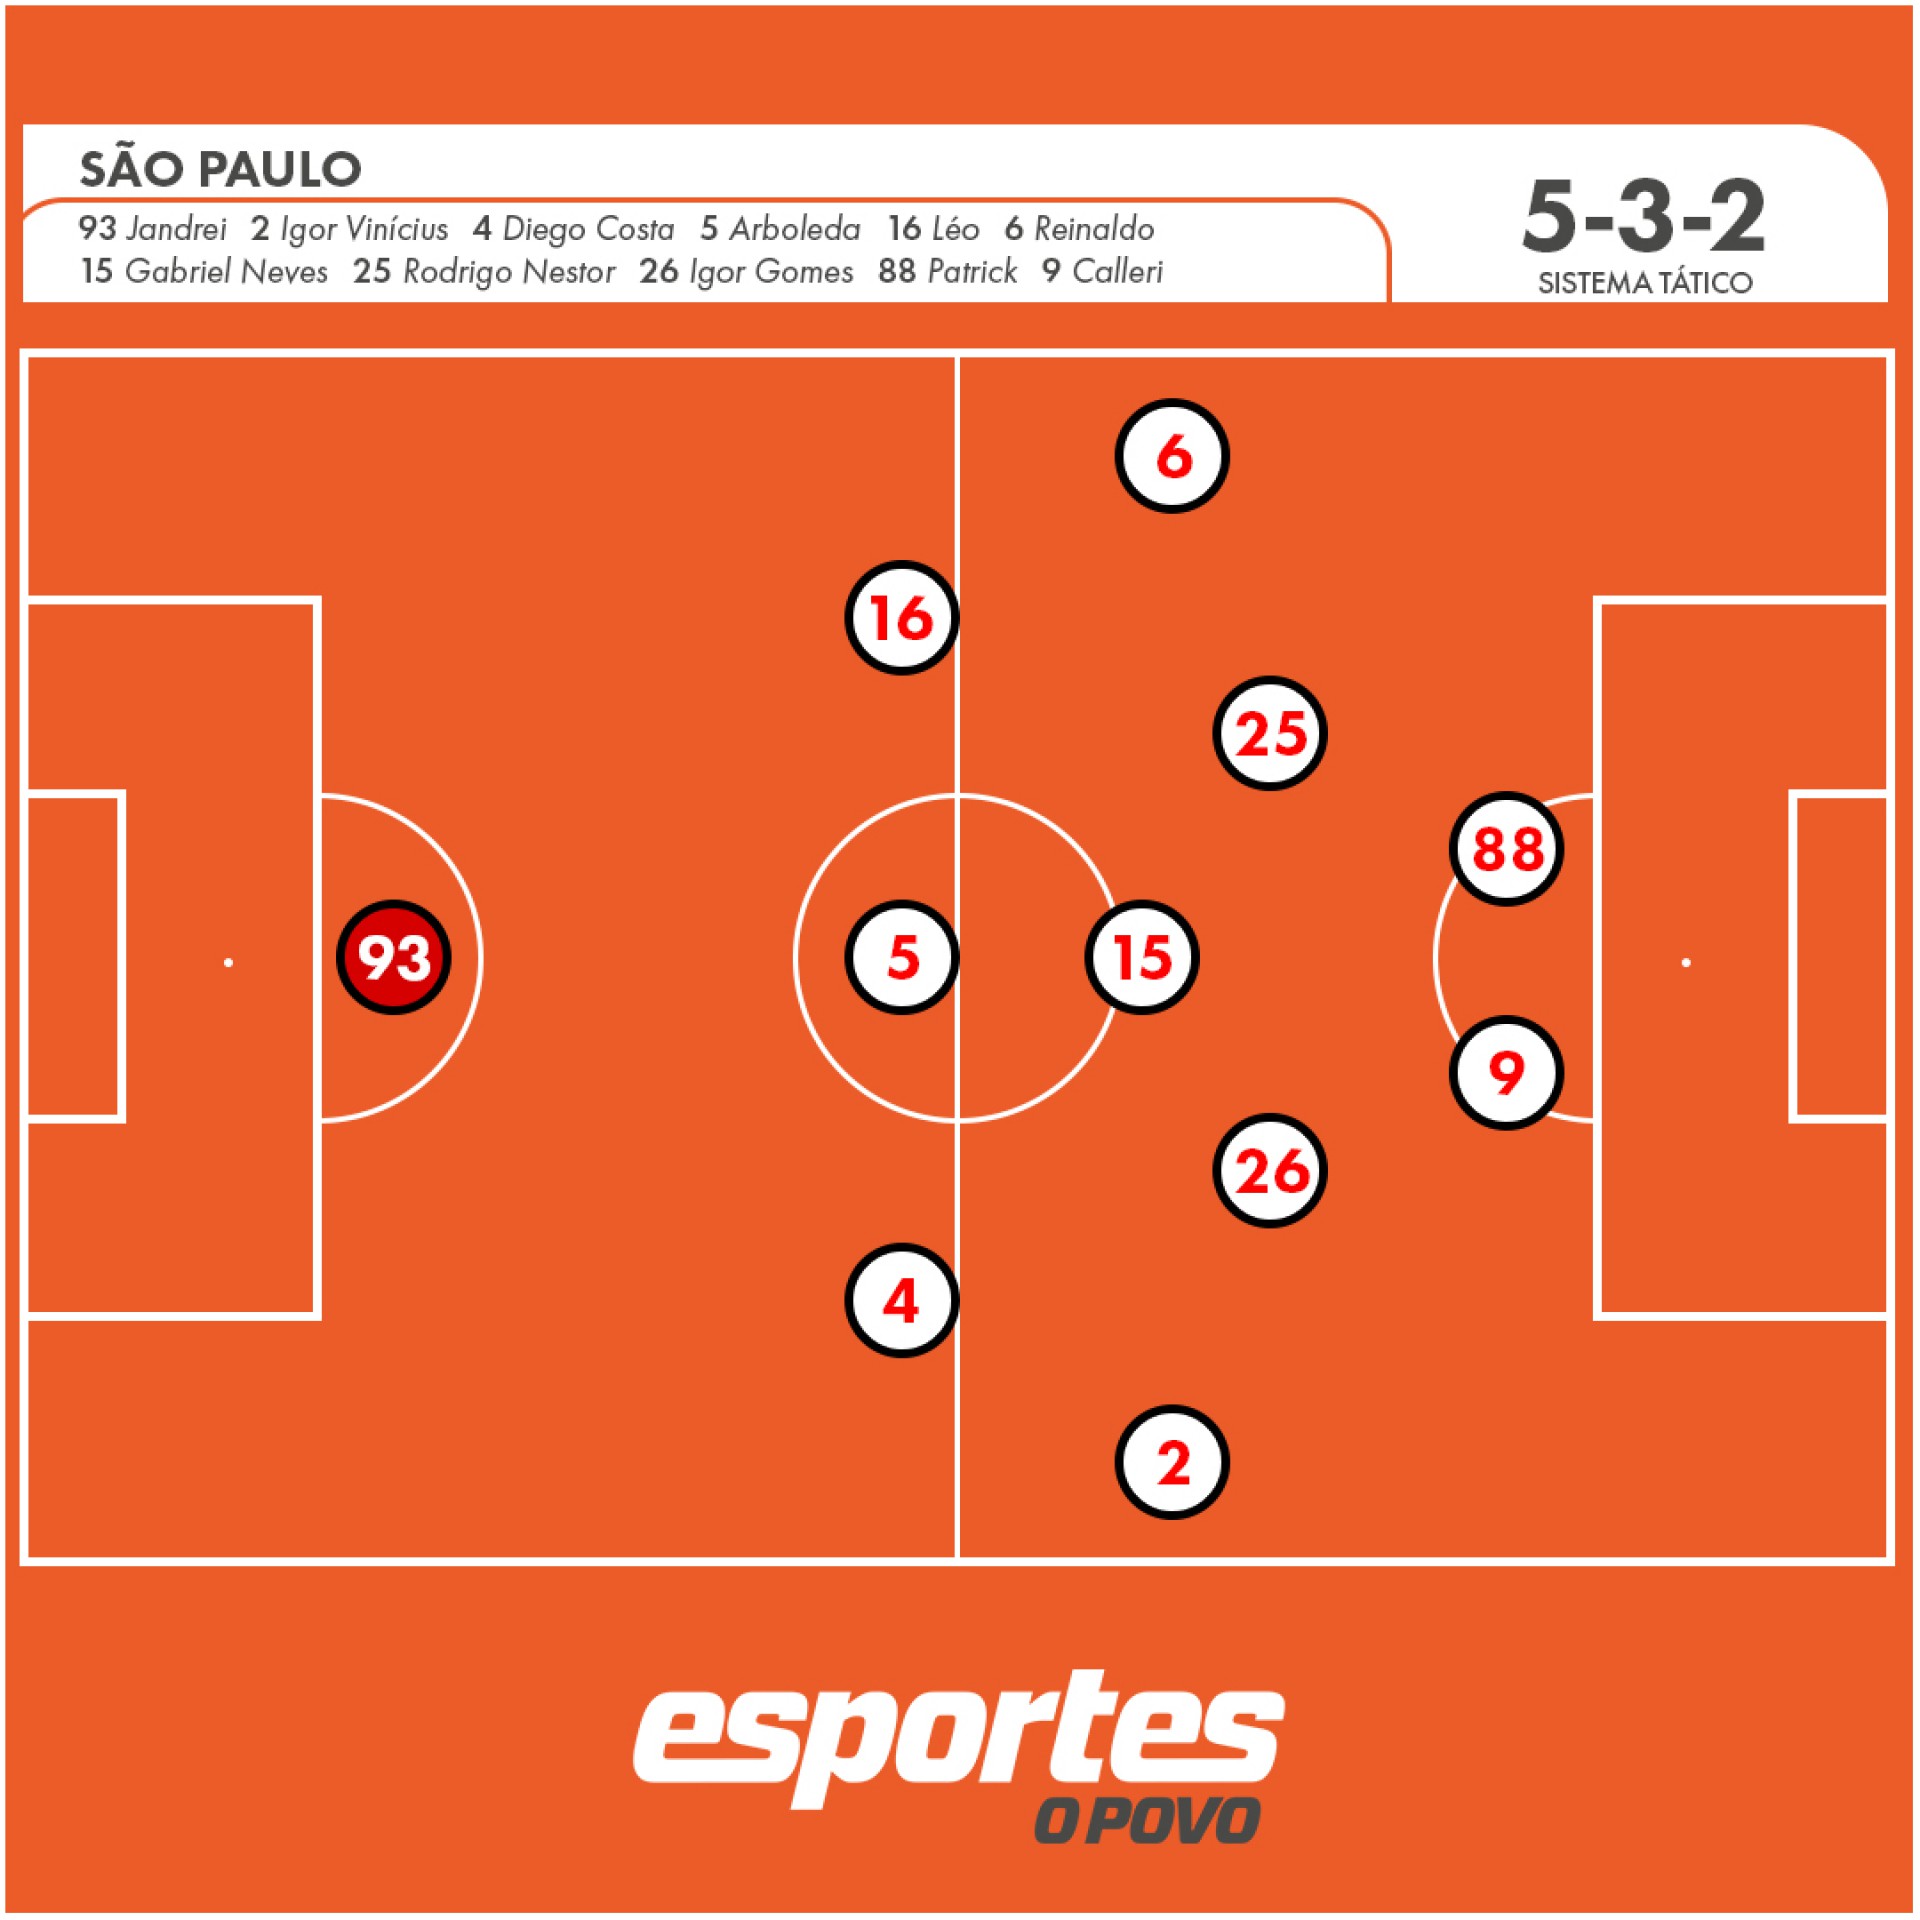 O São Paulo no primeiro momento da fase defensiva. 